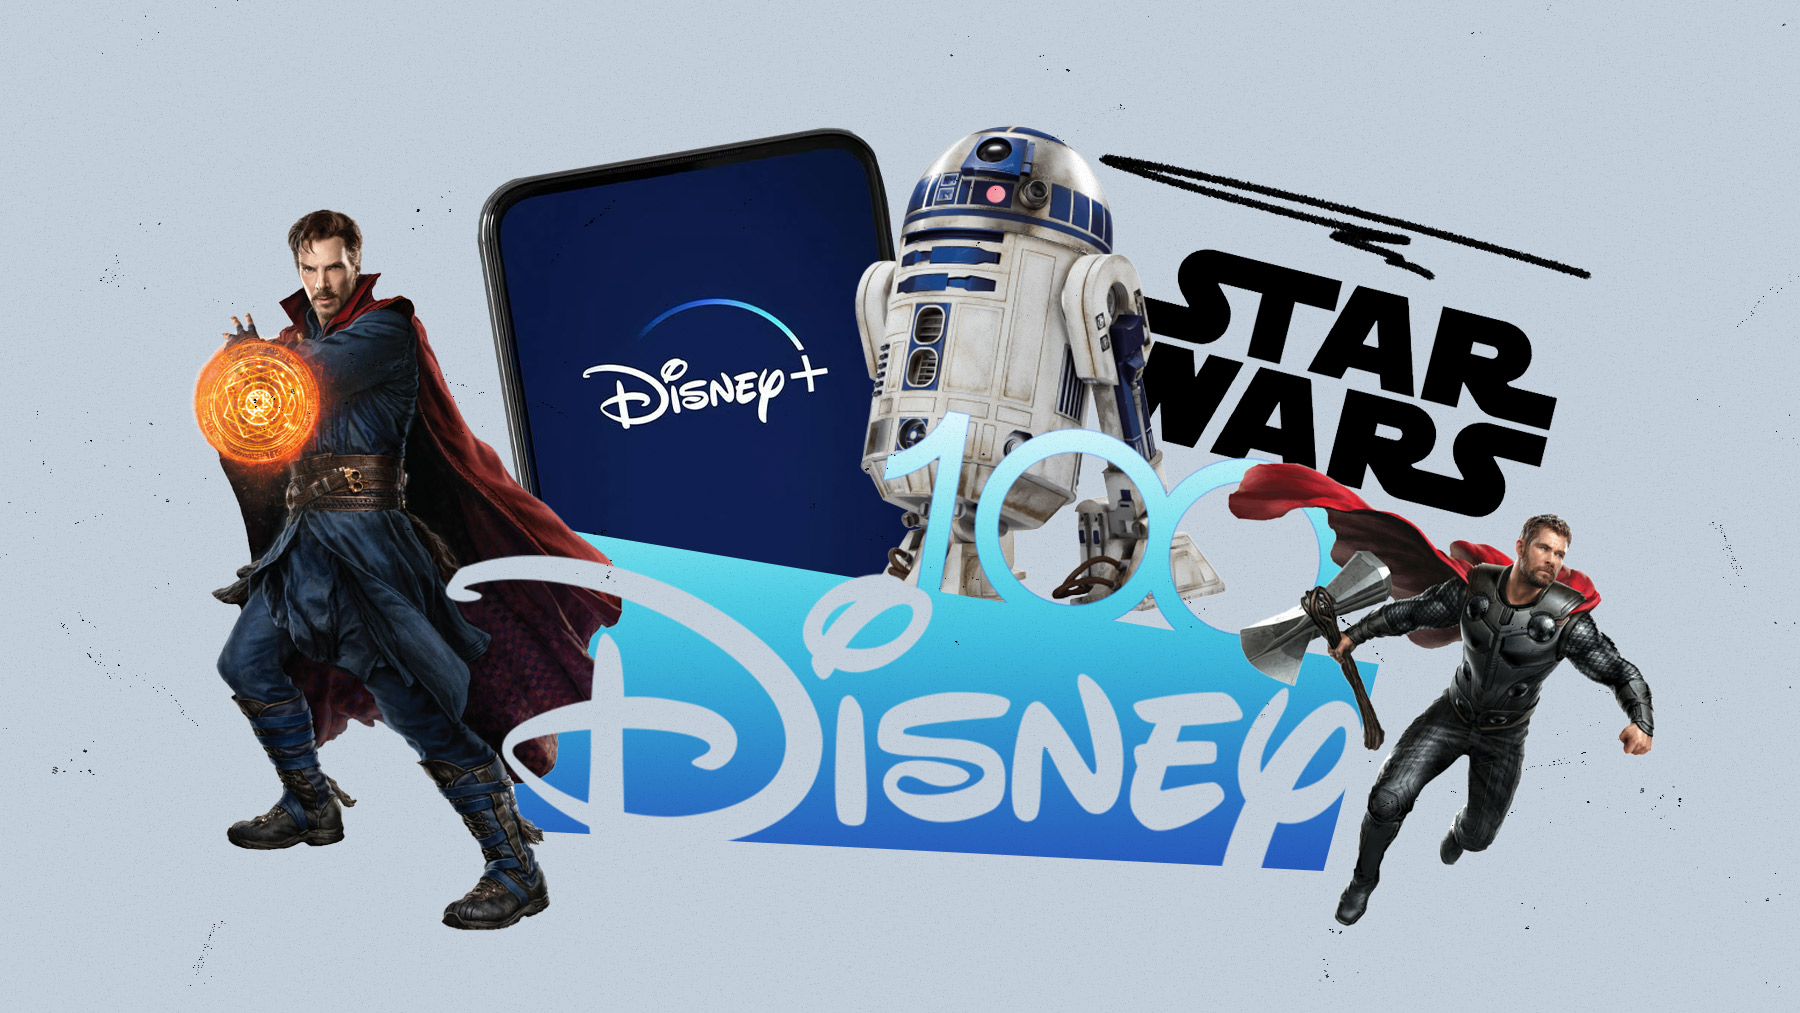 La grave crisis de Disney en su centenario: subida de precios, fin de Marvel y Star Wars, y posible venta